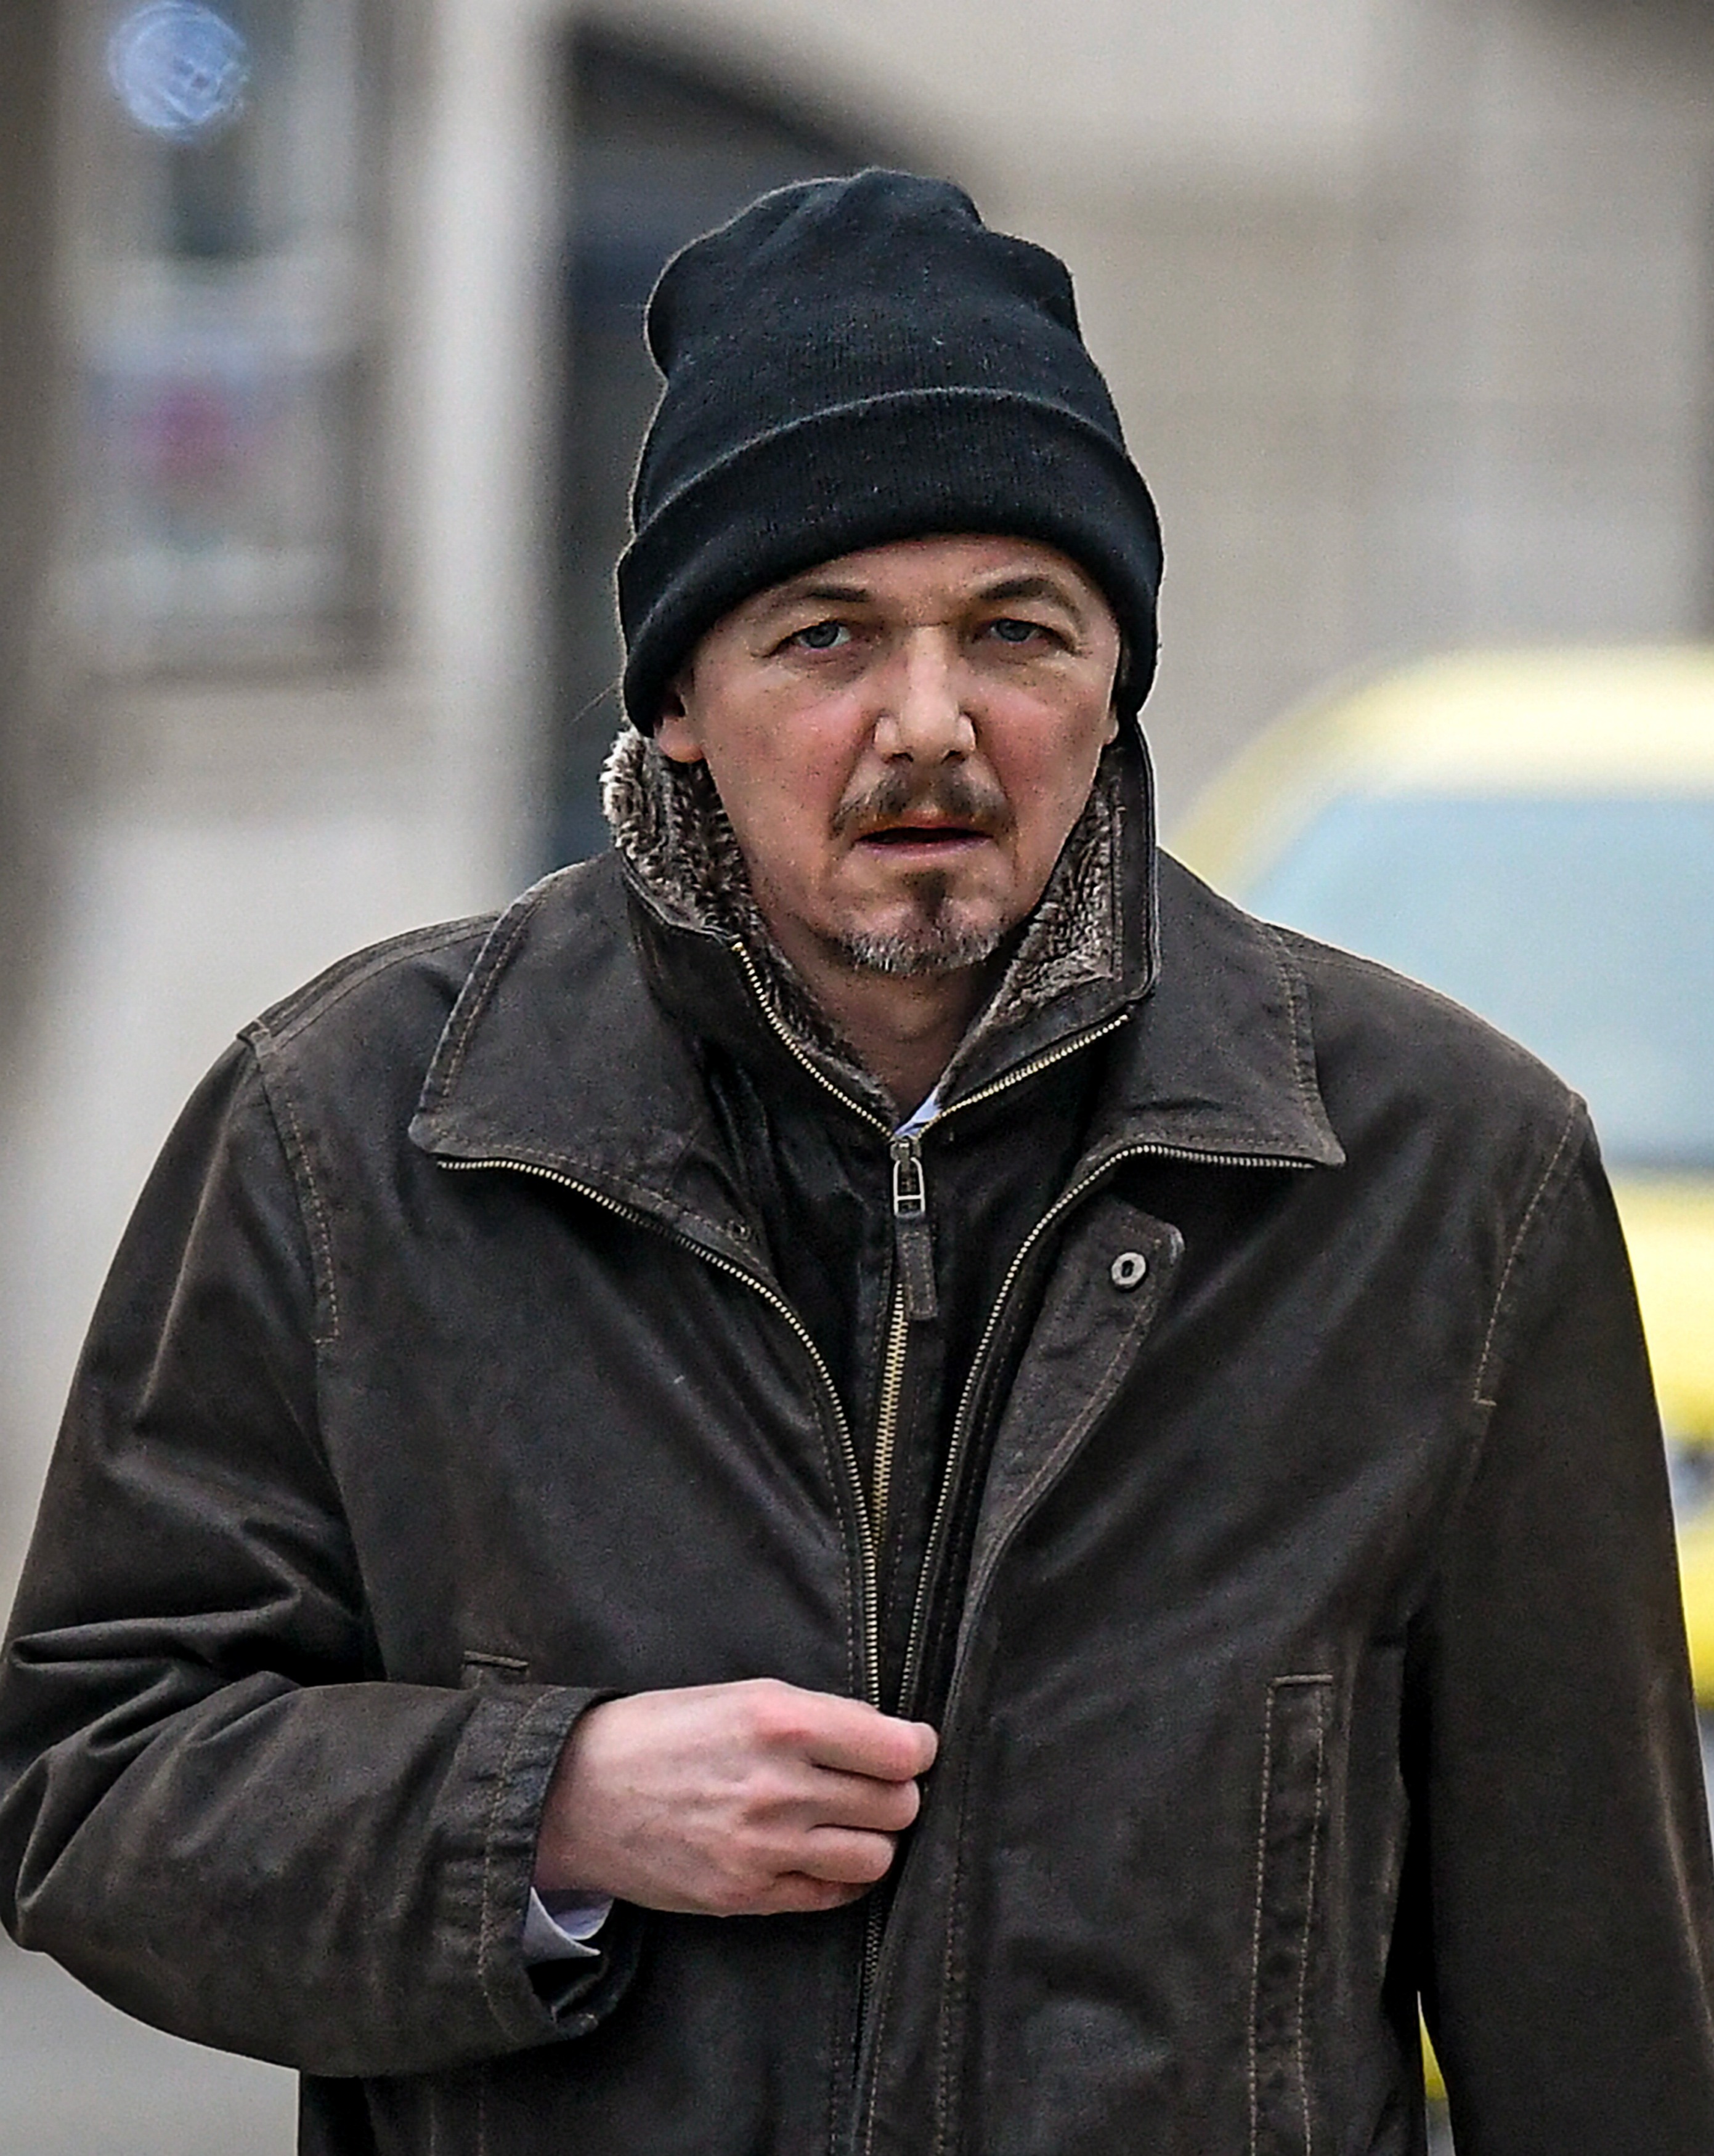 Josselin Herjean outside Southampton Crown Court was handed a 16-week jail sentence following the crash